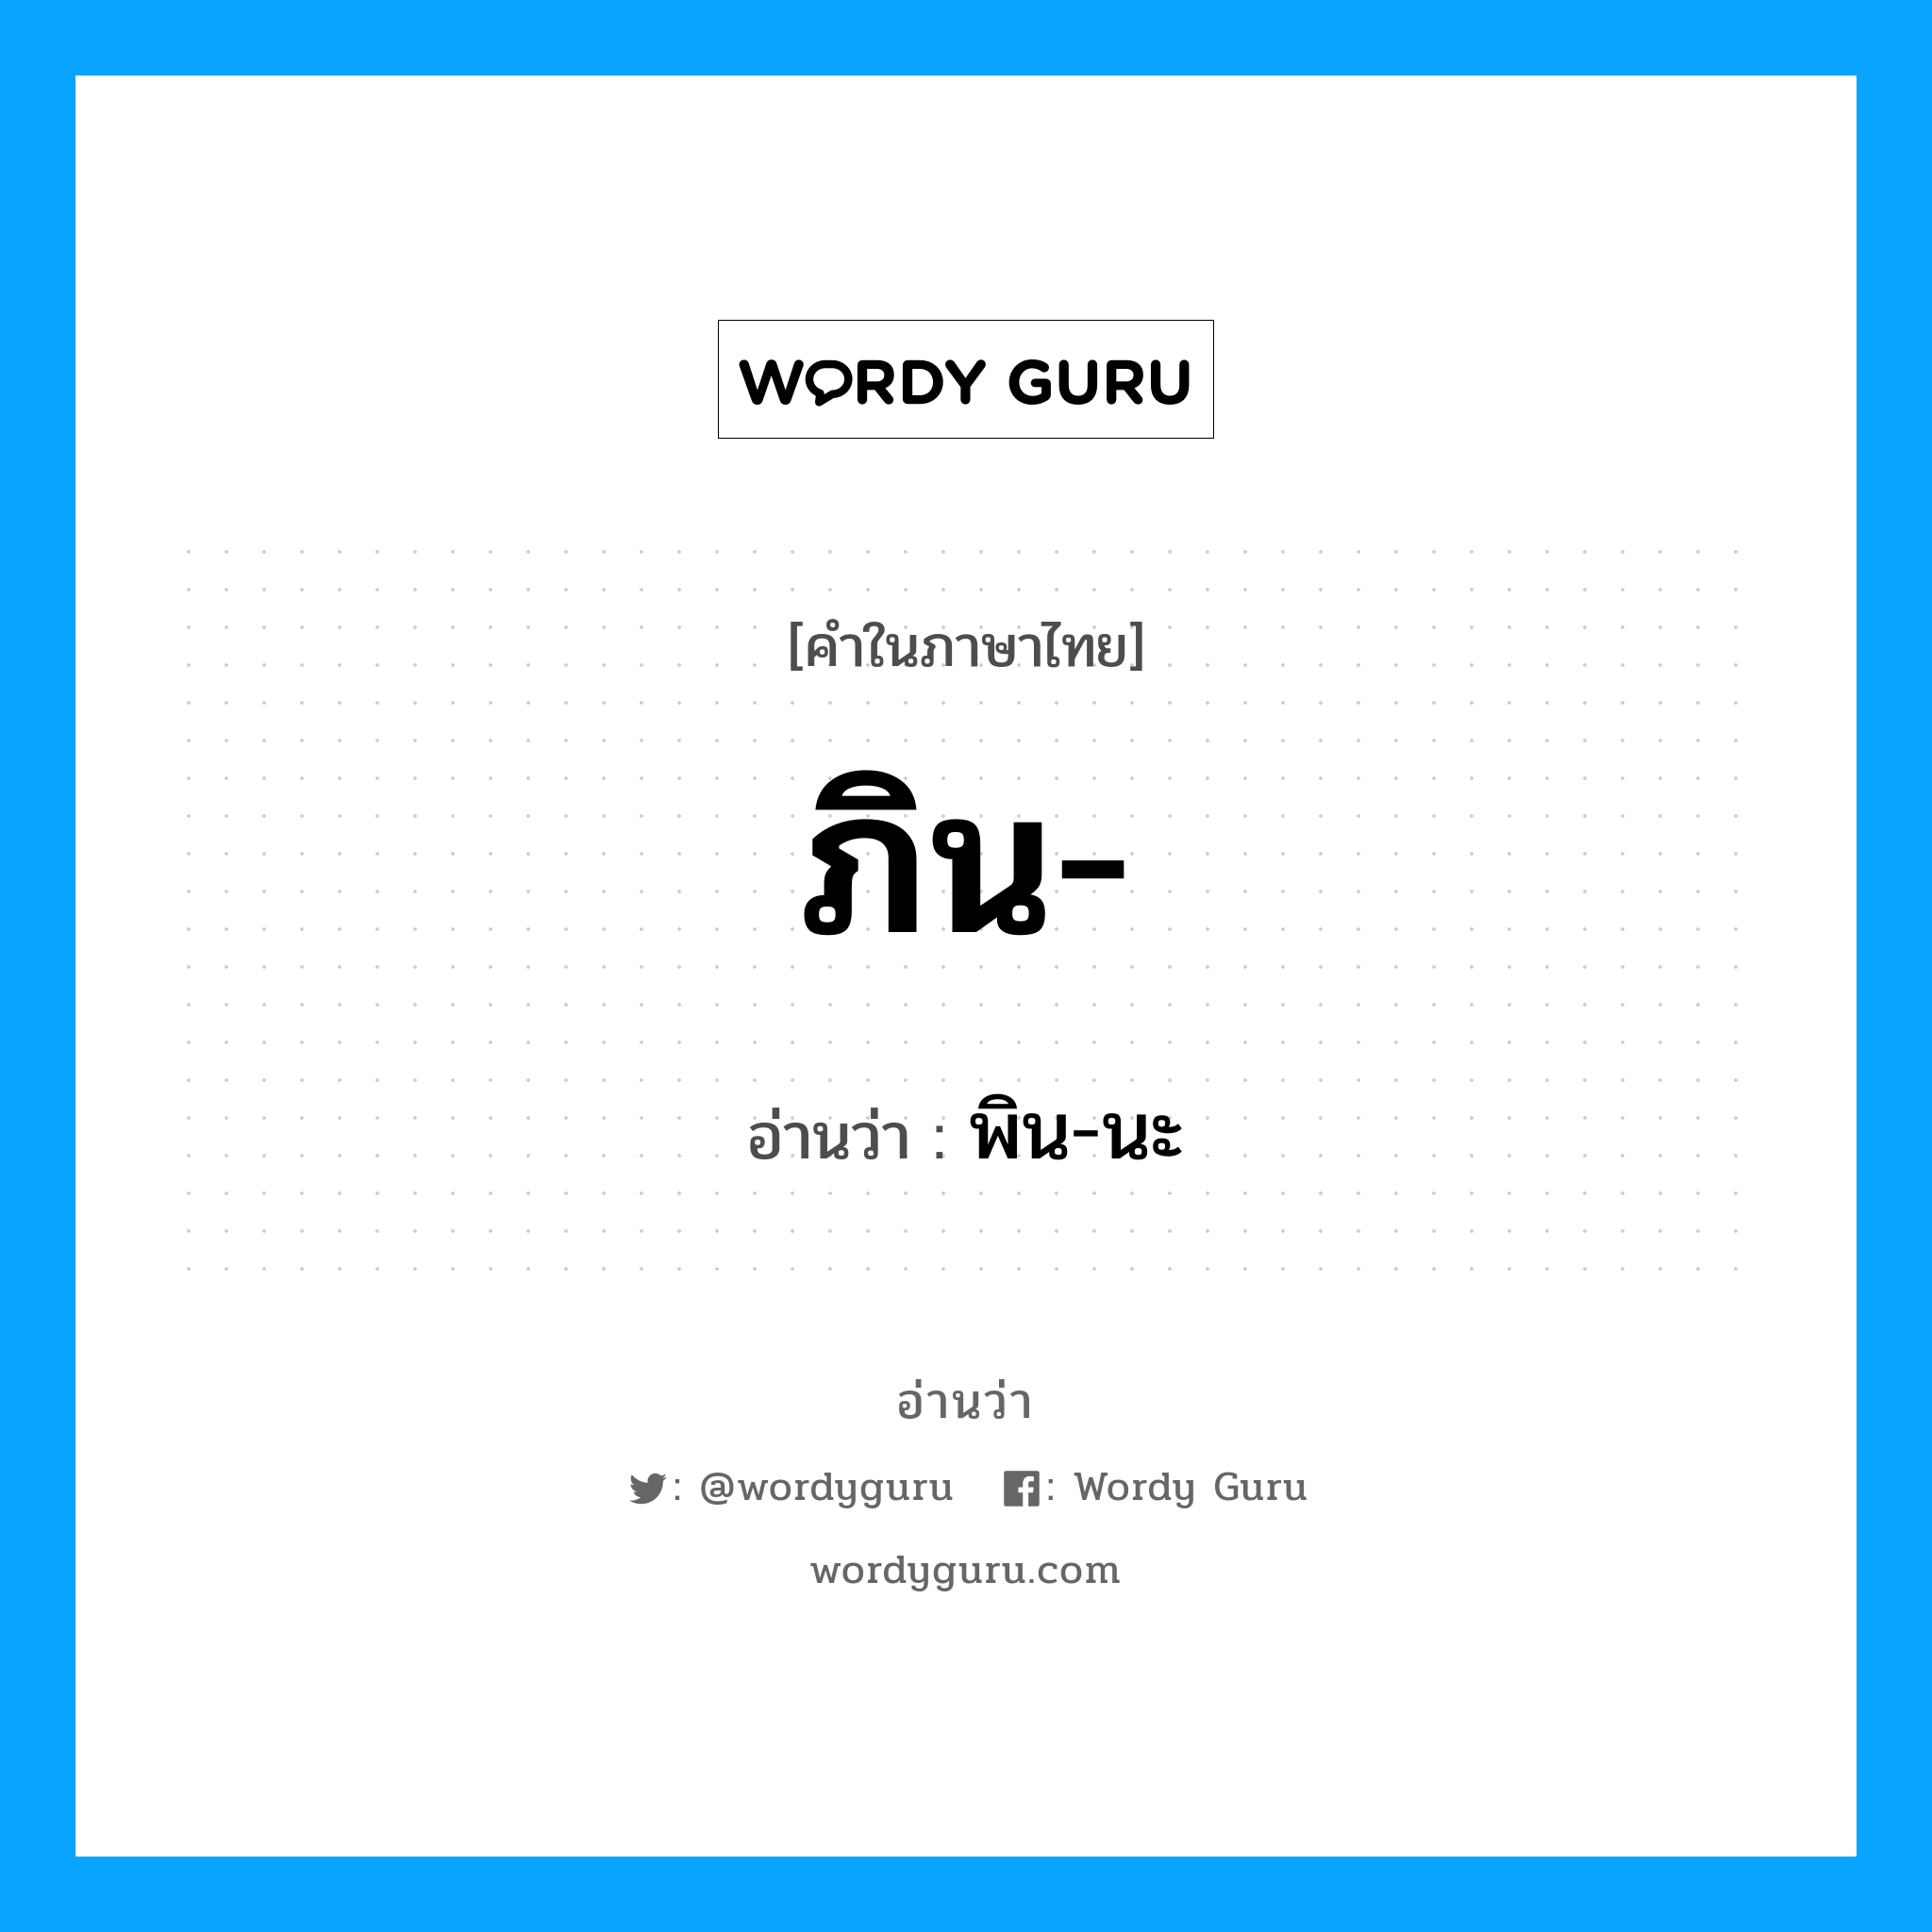 พิน-นะ เป็นคำอ่านของคำไหน?, คำในภาษาไทย พิน-นะ อ่านว่า ภิน-